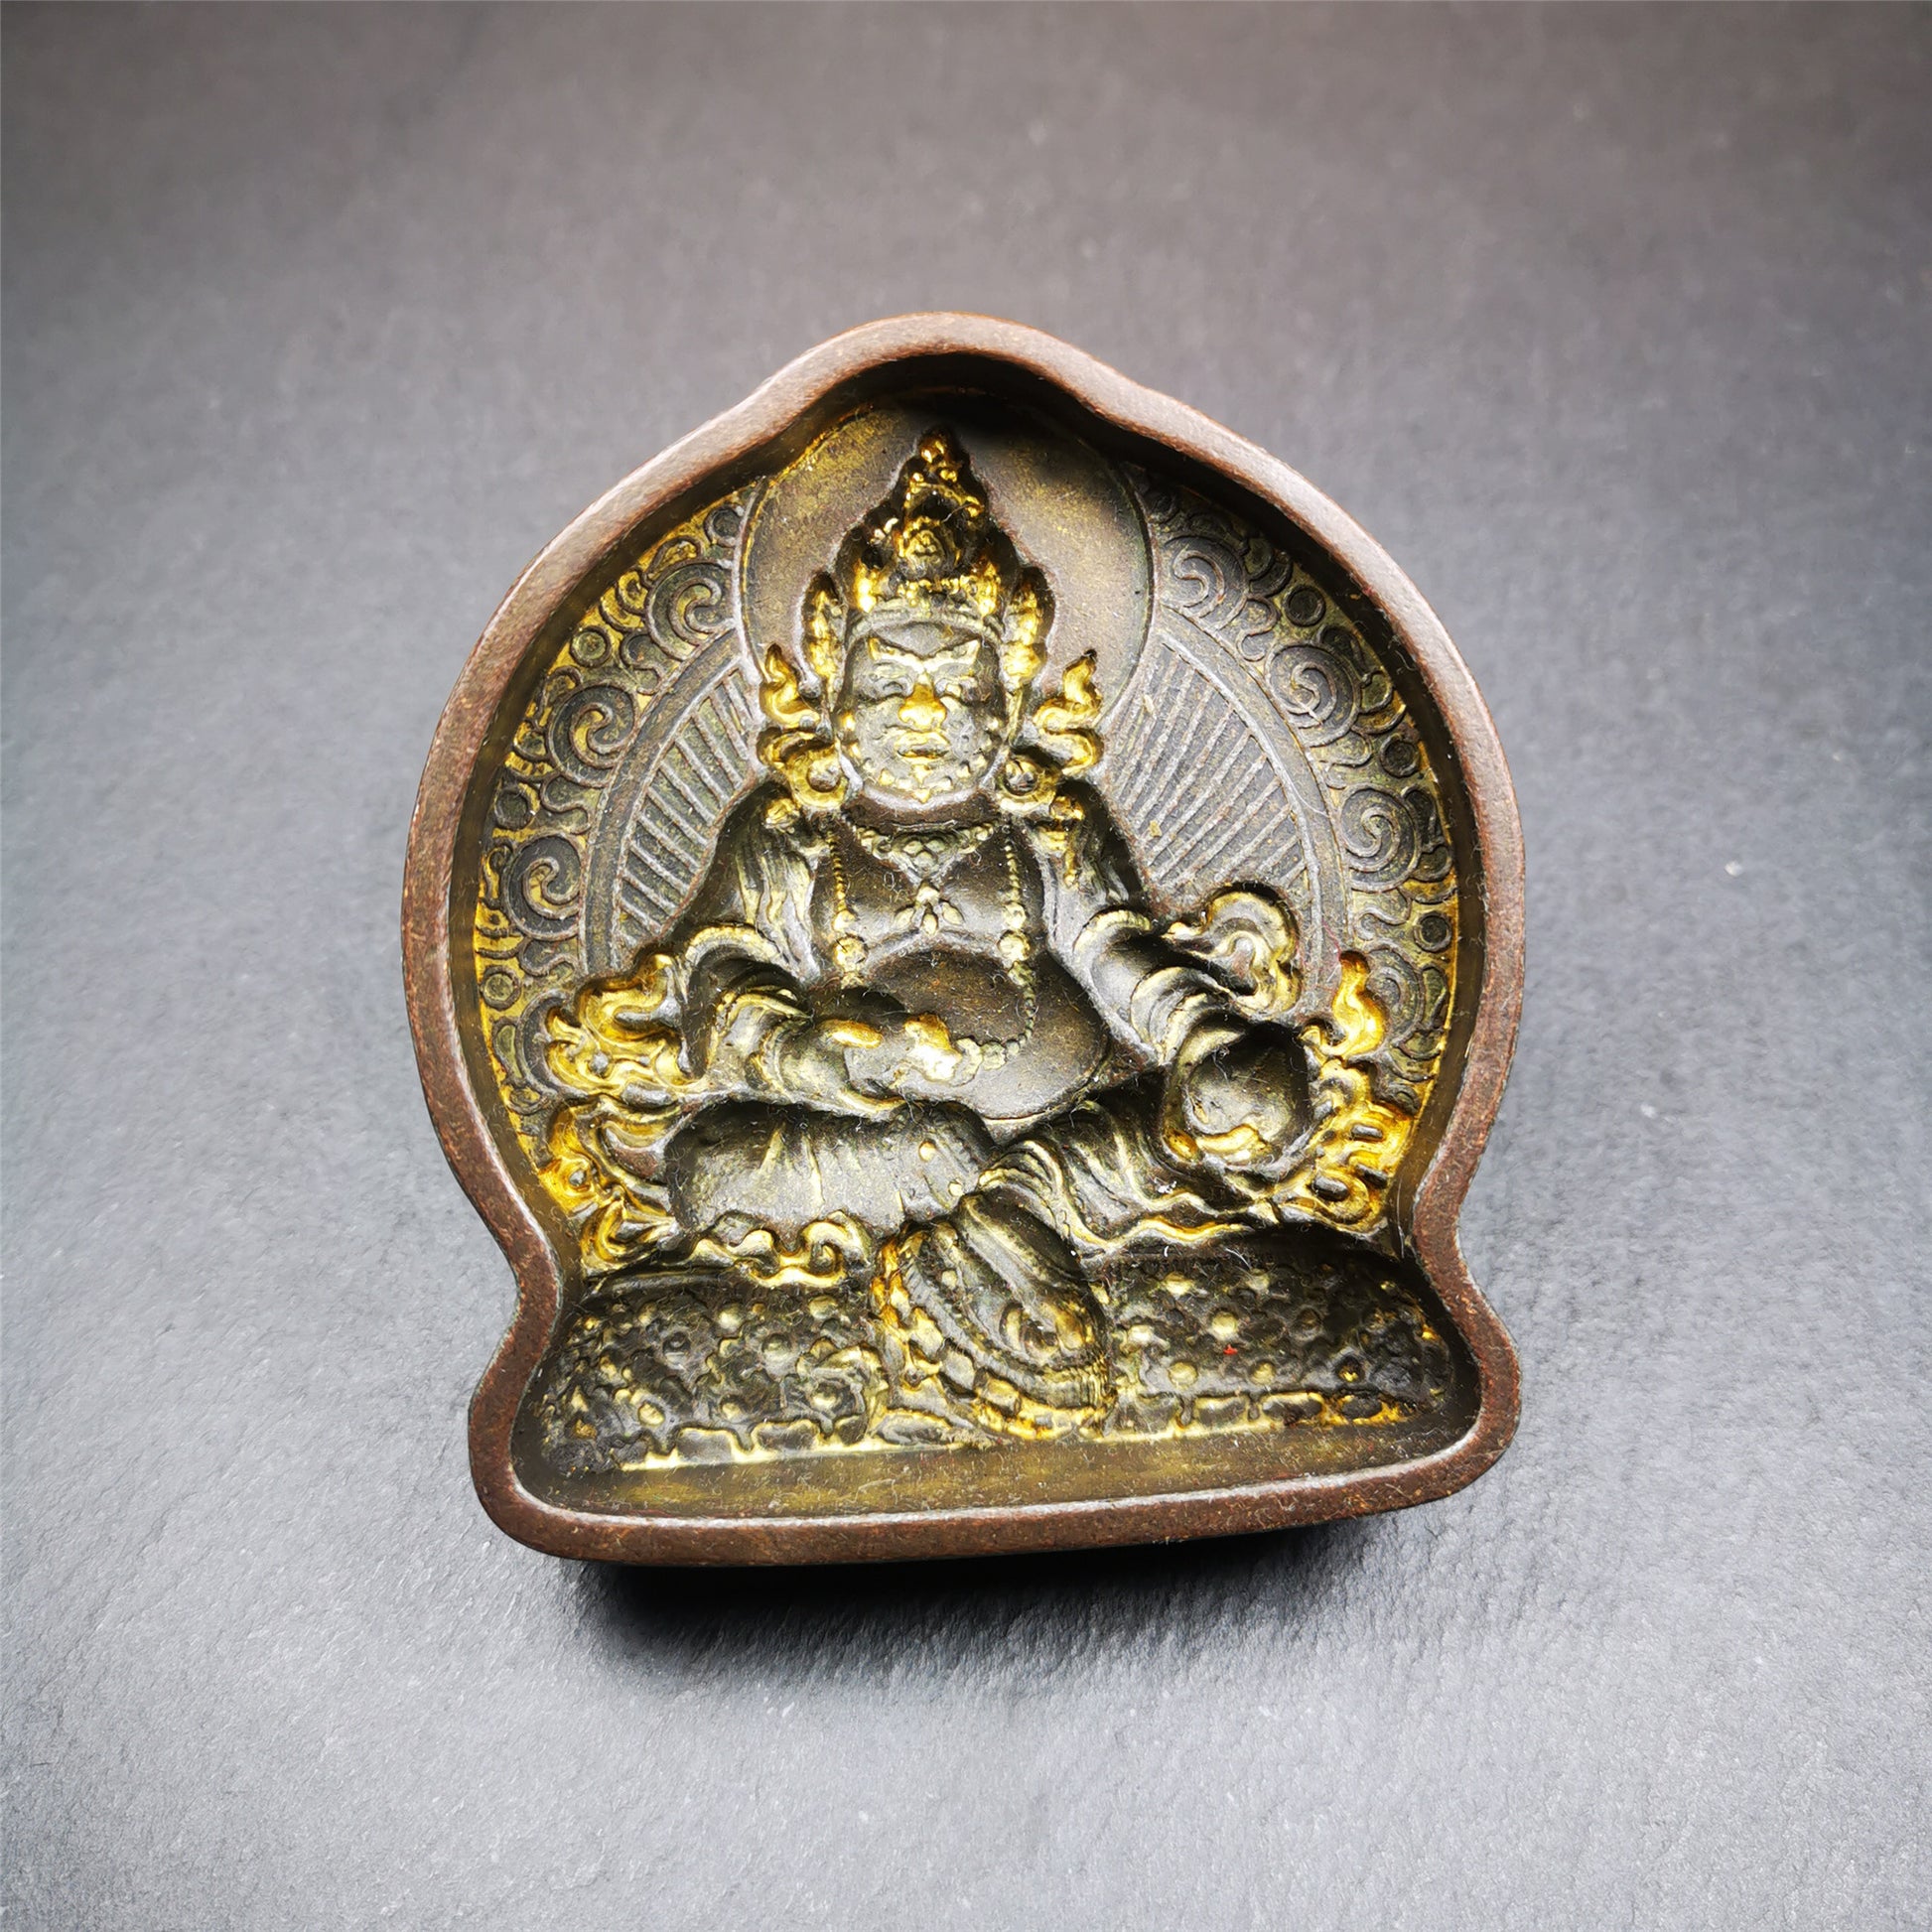 Gandhanra Handmade Tibetan Buddha Statue Tsa Tsa Mold,Yelllow Jambhala,Copper Mould For Making Clay Buddha Statue,Tsha Tsha